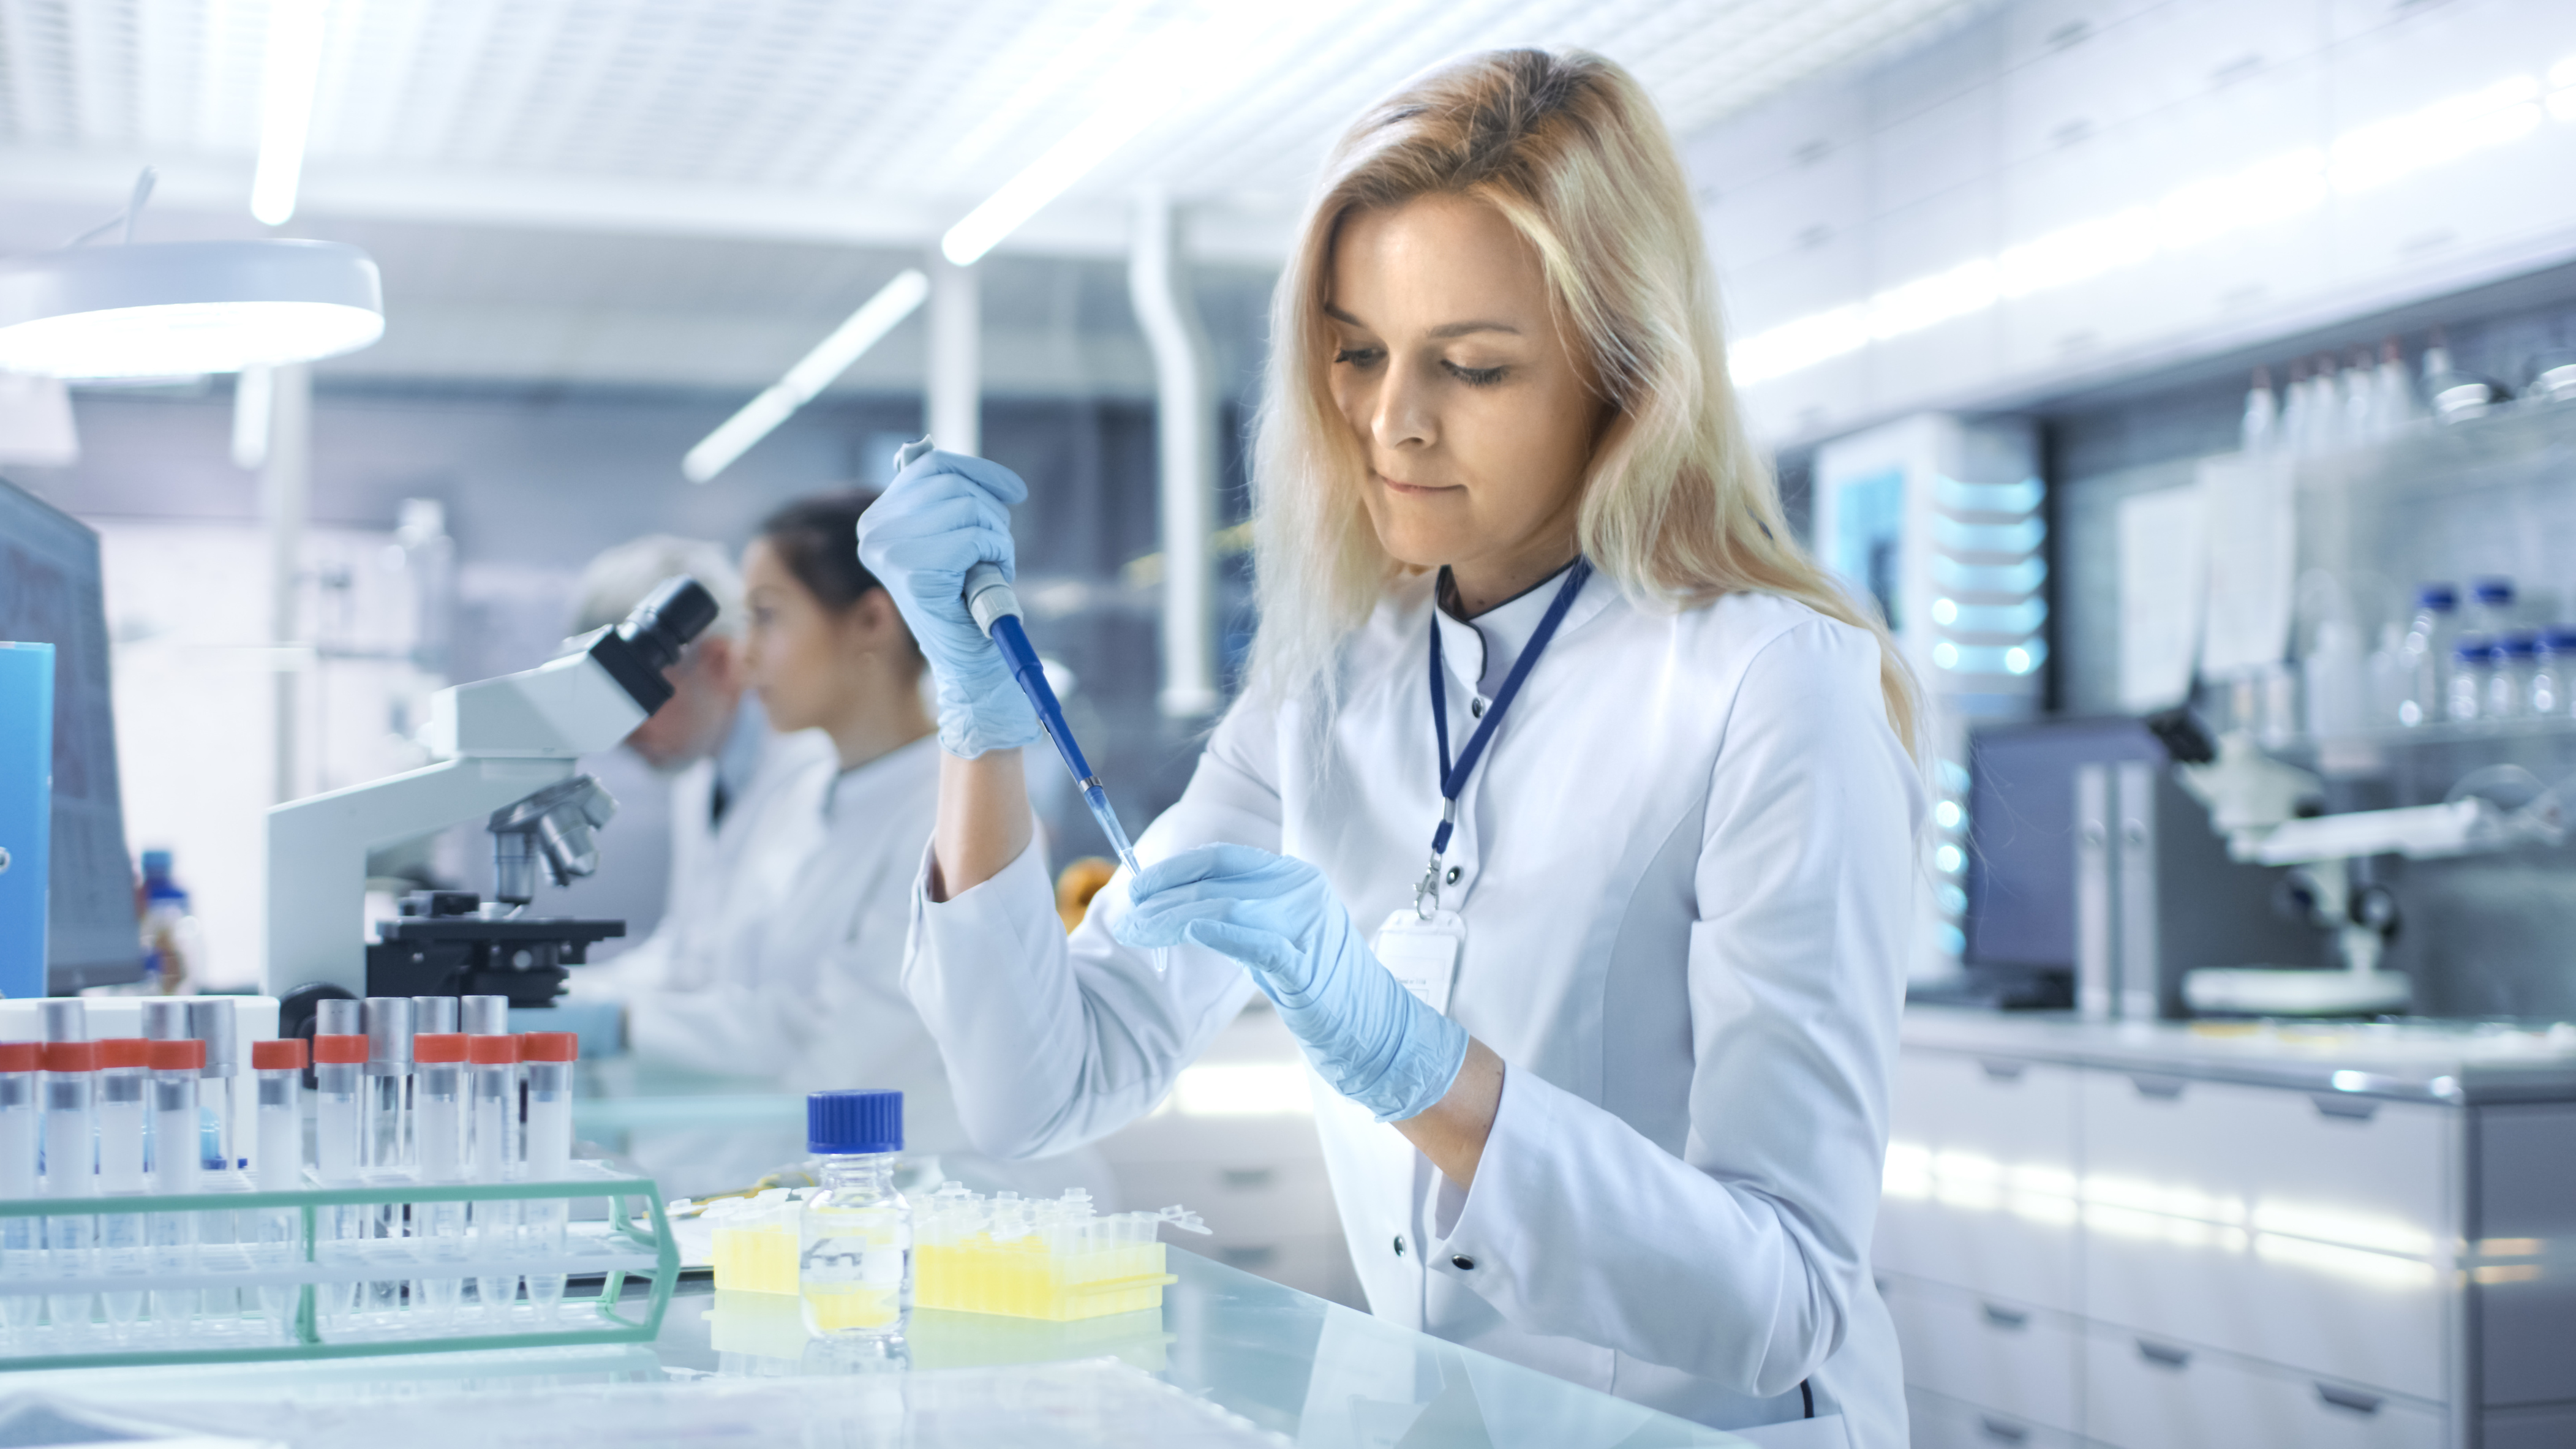 Eine blonde Frau in weißer Kleidung hält in der rechten Pipette, mit der sie gerade etwas in ein kleines Gefäß in ihrer linken Hand füllt. Ein Stück weiter rechts ist ein Mikroskop und sind eine Frau und ein Mann zu sehen.